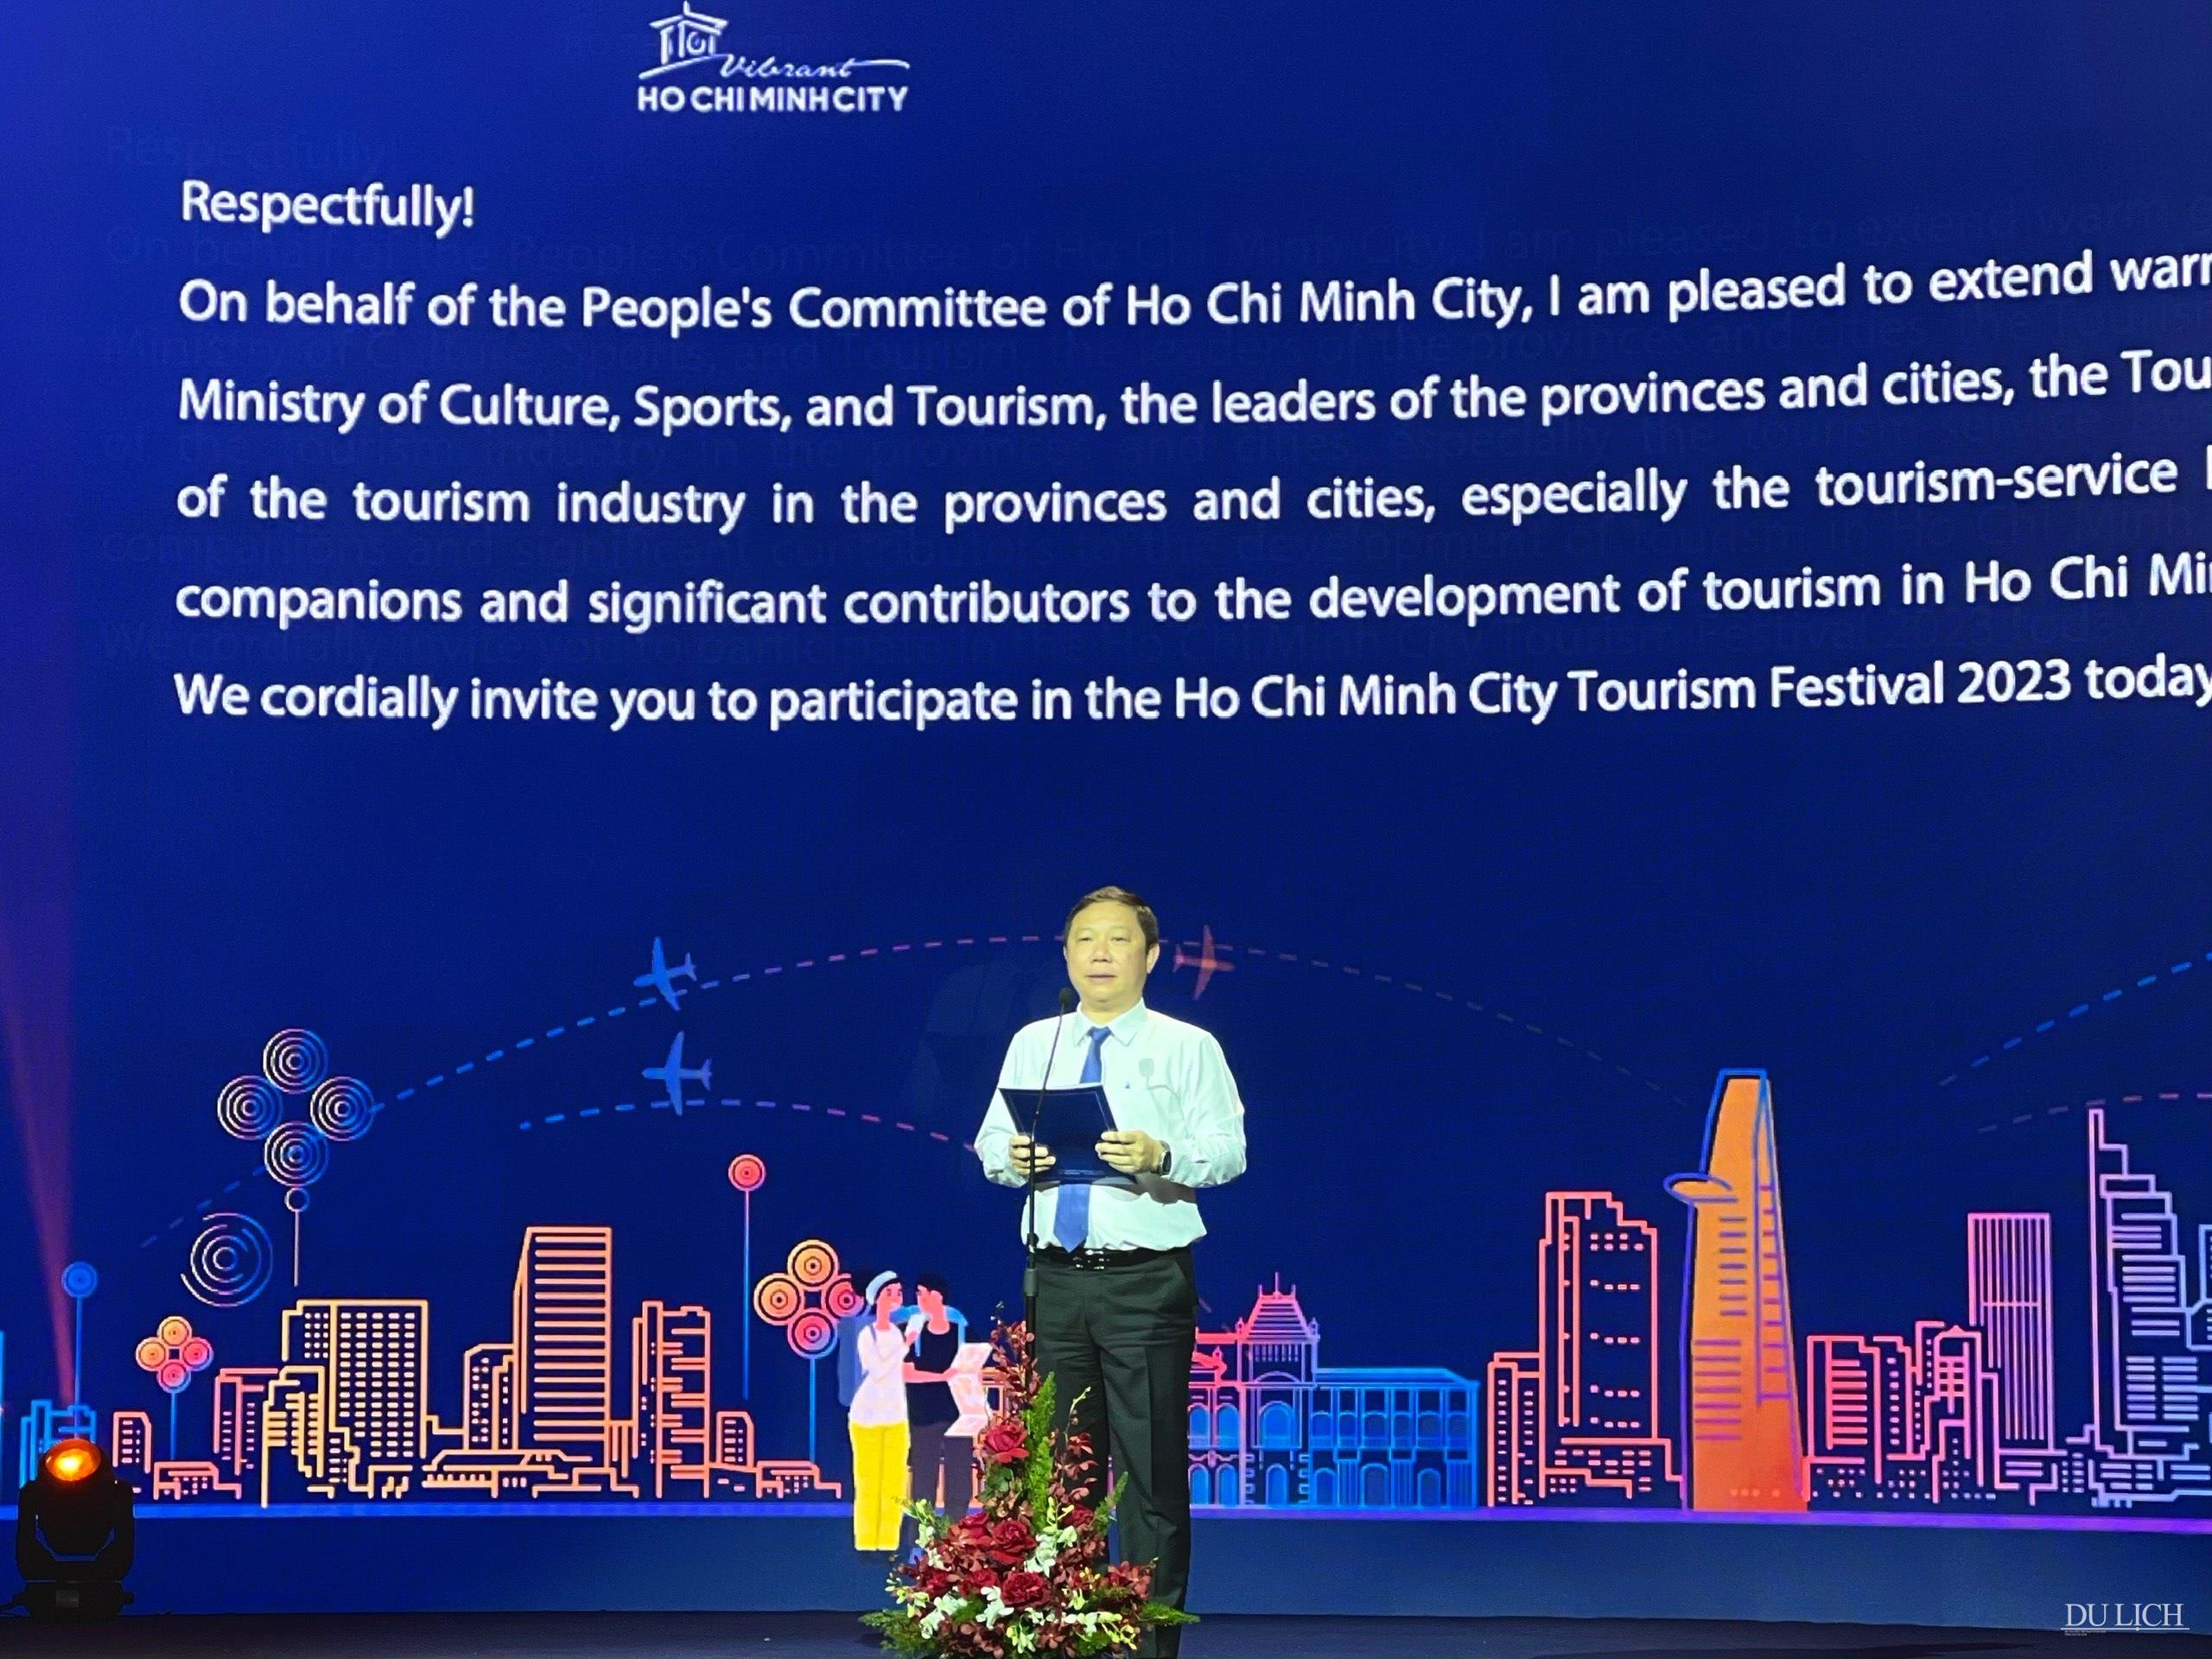 Phó Chủ tịch UBND TP. Hồ Chí Minh Dương Anh Đức phát biểu khai mạc Ngày hội Du lịch TP. Hồ Chí Minh lần thứ 19